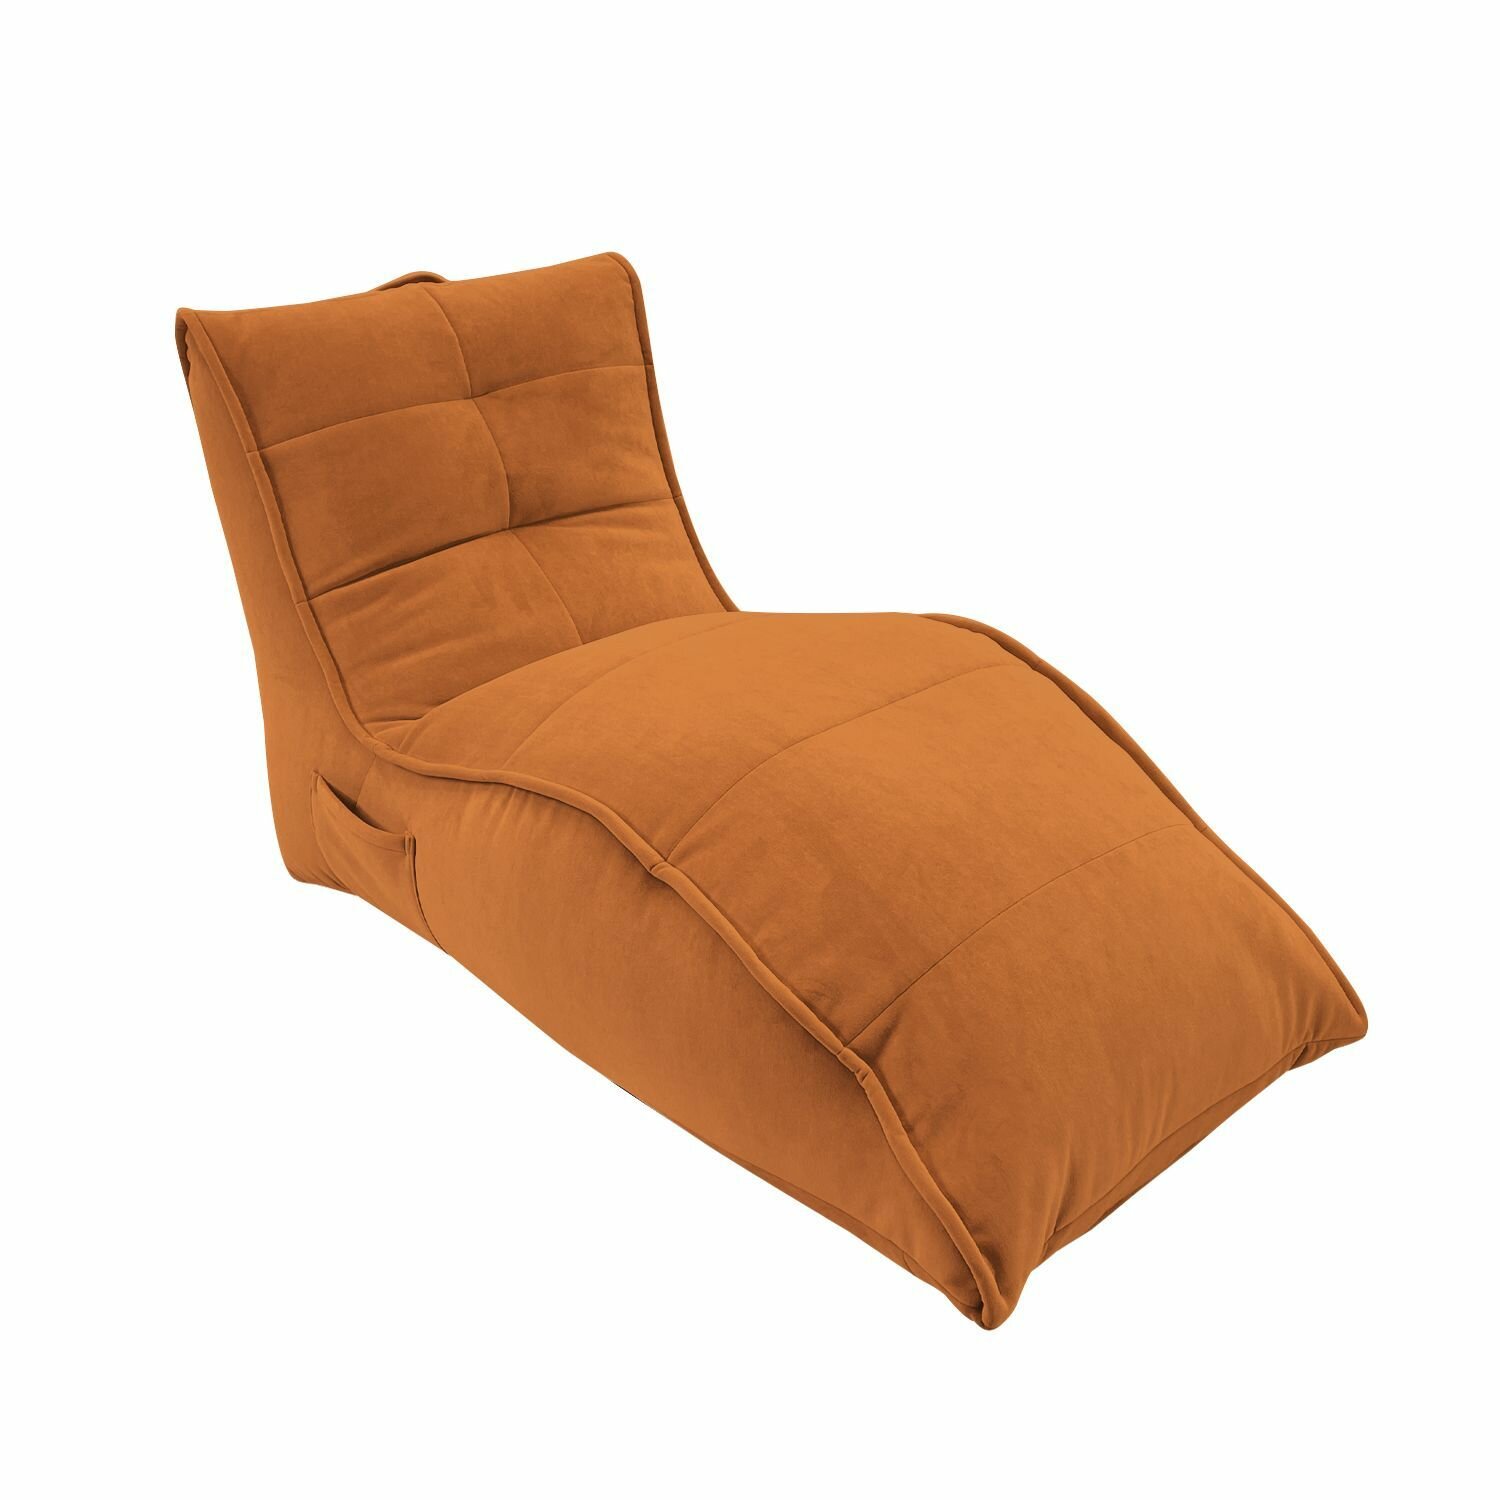 Бескаркасное кресло для отдыха aLounge - Avatar Sofa - Terra Cocta (велюр, терракотовый) - лаунж мебель в гостиную, спальню, детскую, на балкон